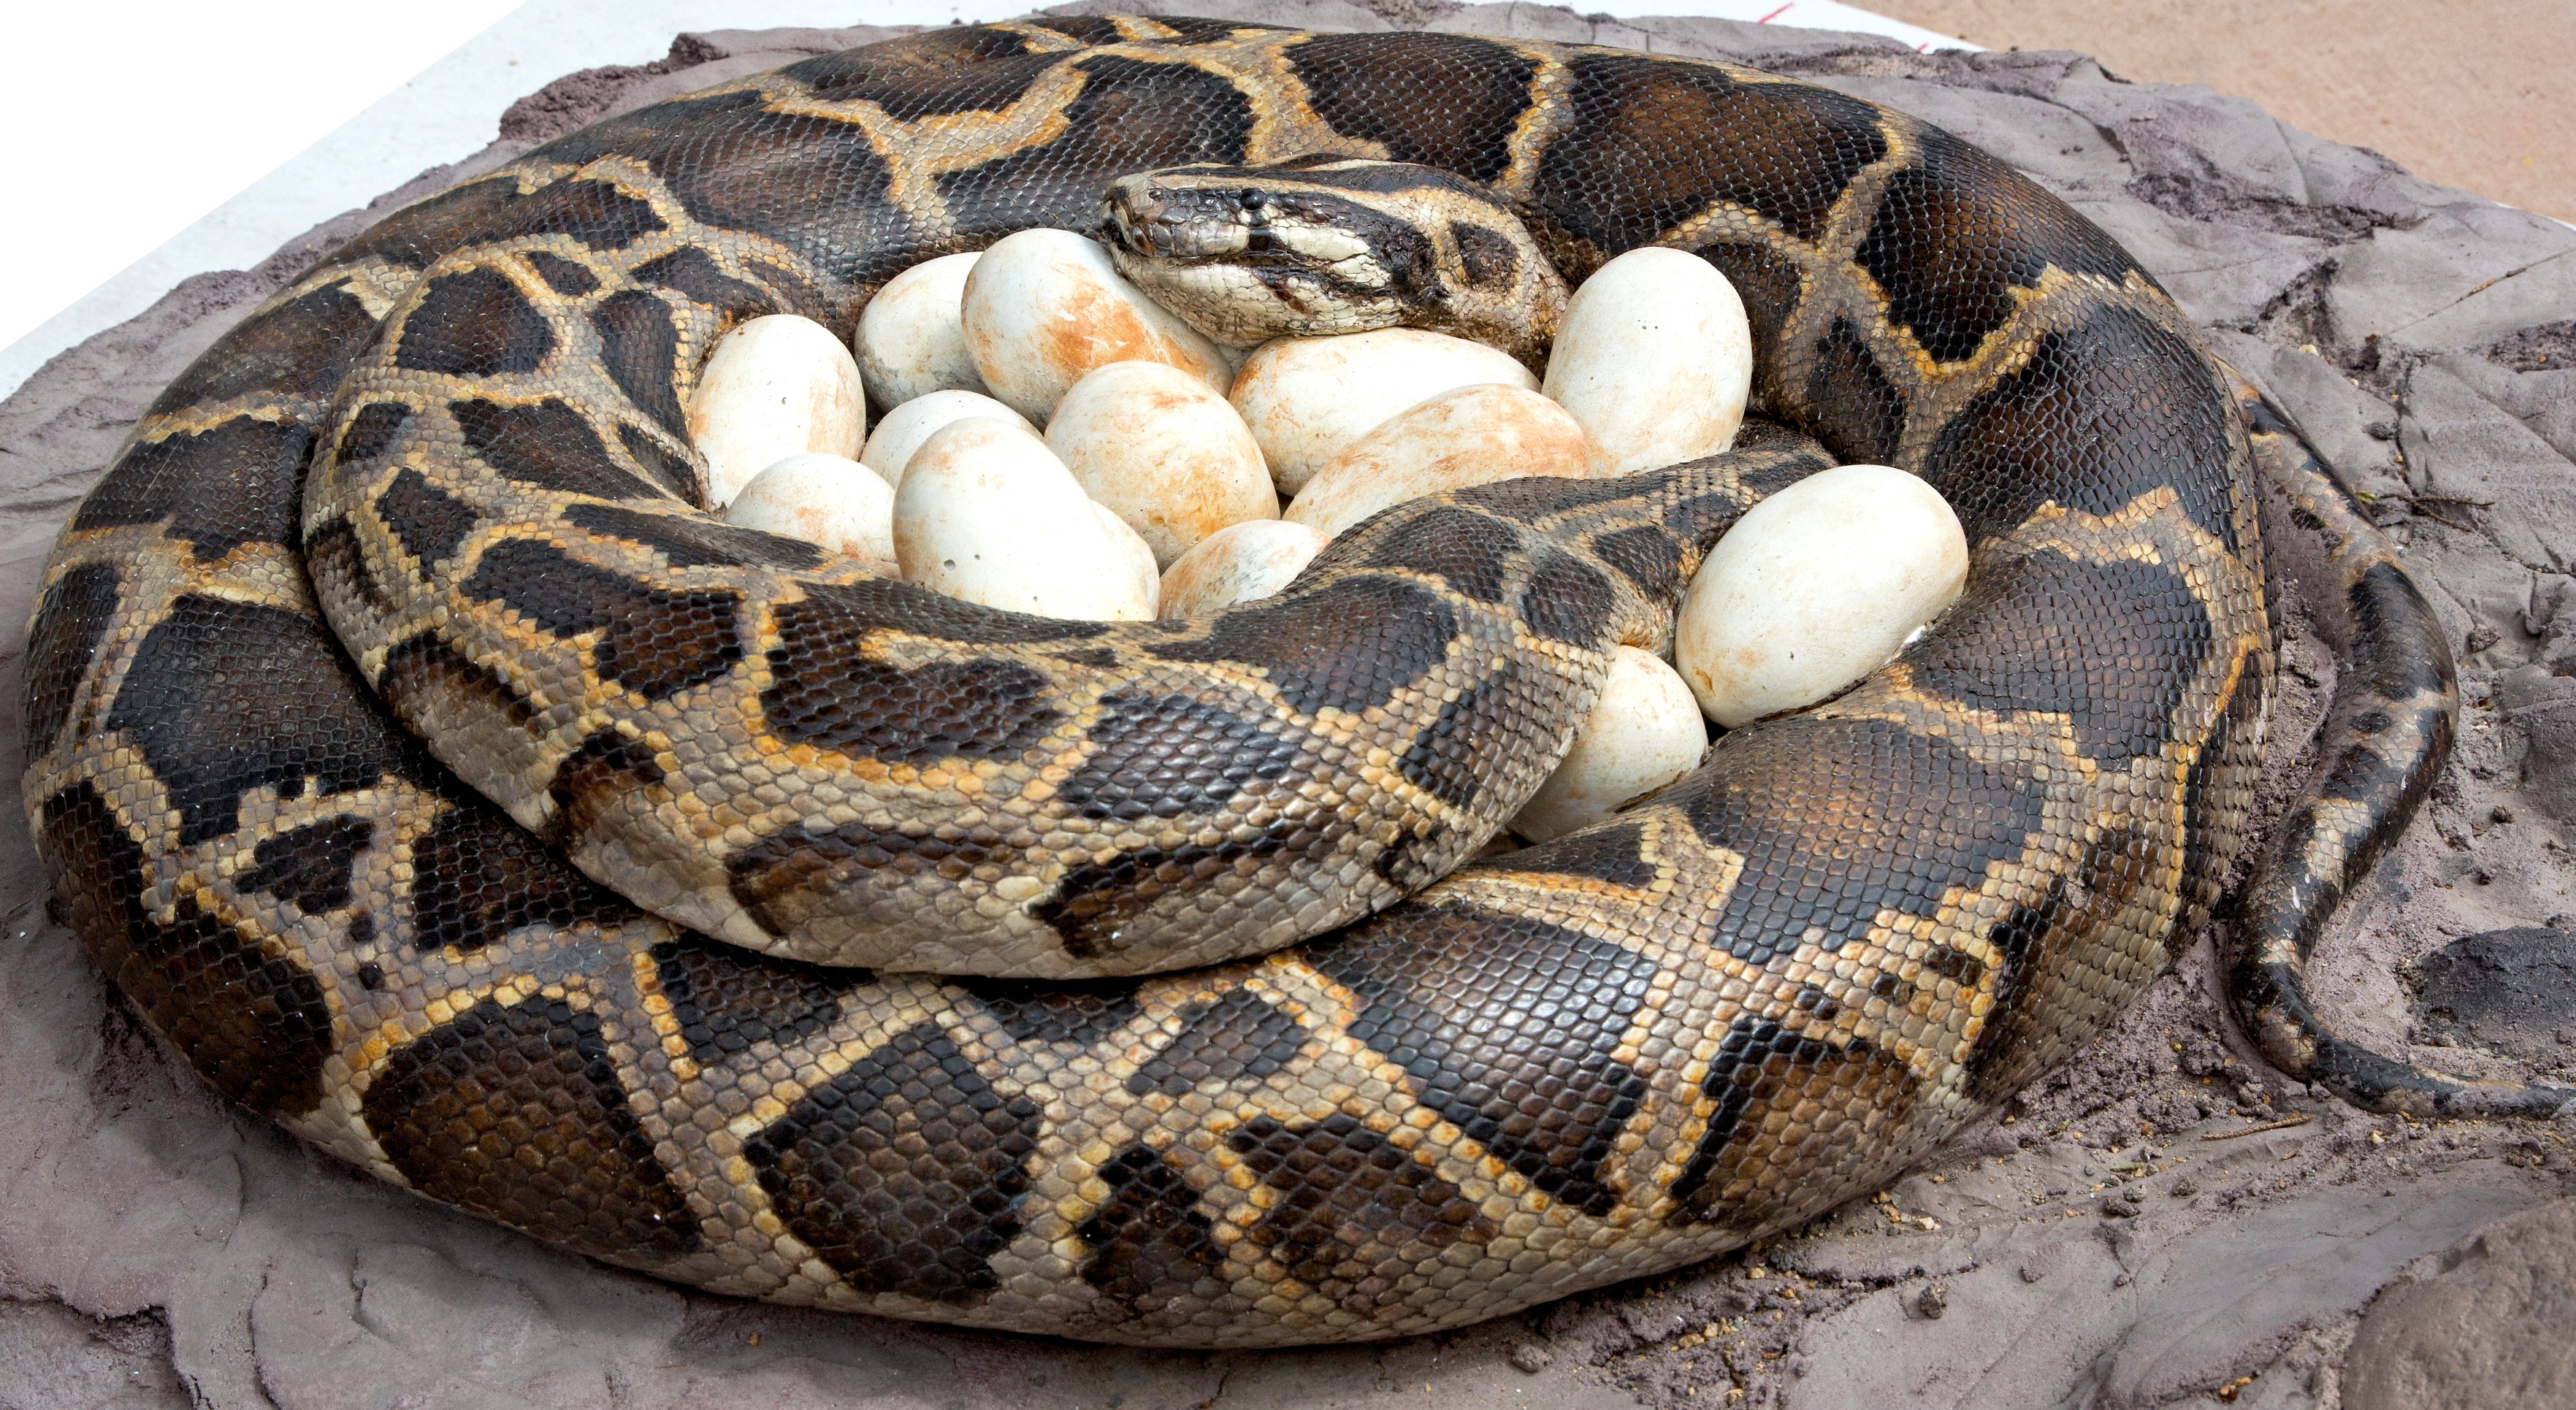 Burmese Python: The Invasive Snake is Here to Stay | Burmese python ...